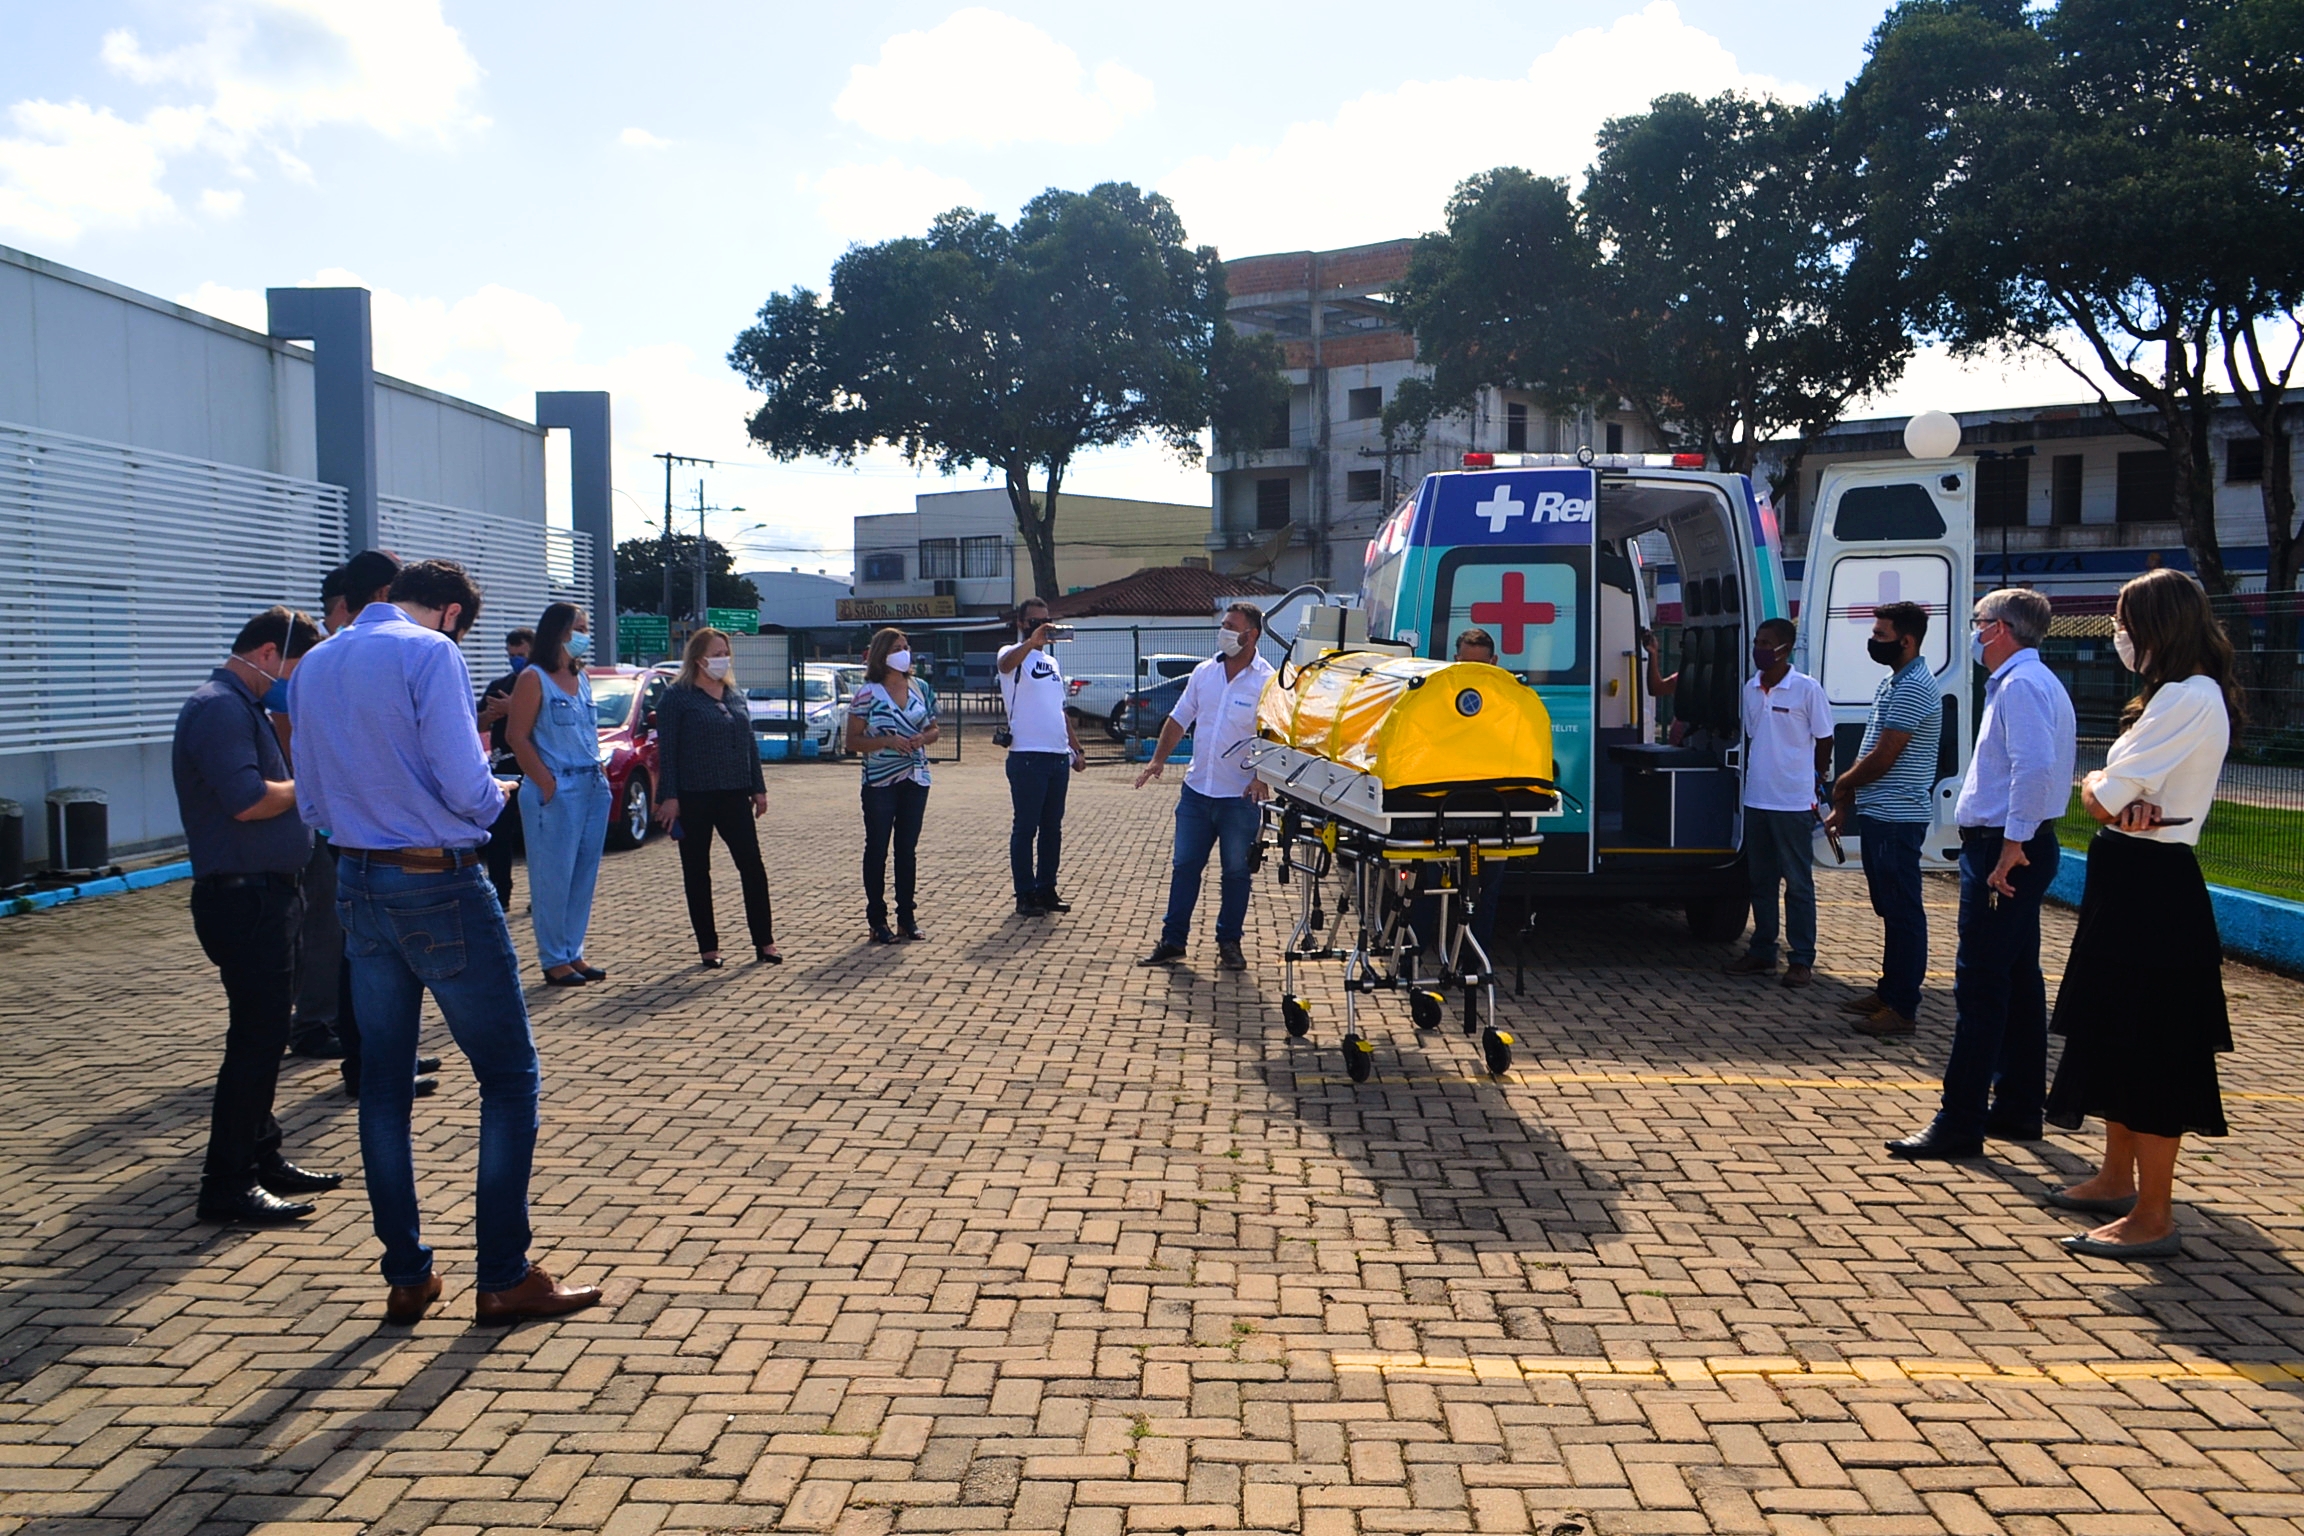 Solenidade de entrega da ambulância aconteceu no pátio da Rede Cuidar em Nova Venécia